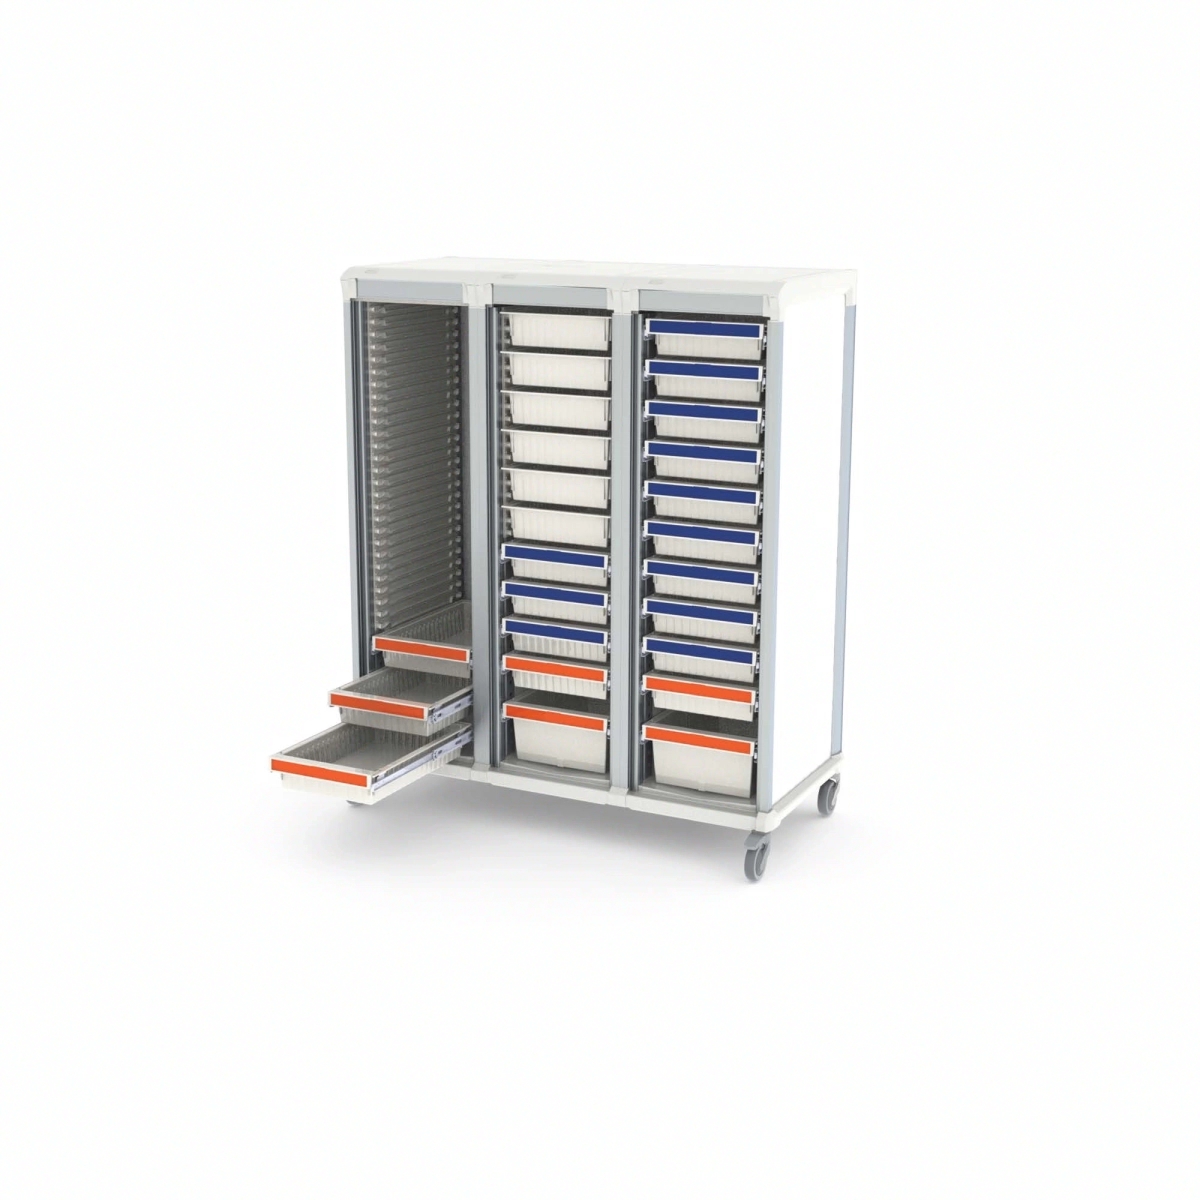 Armoire médicale de transfert ou stockage 3 colonnes, conçue dans des matériaux résistants aux bactéries - WEECART_0